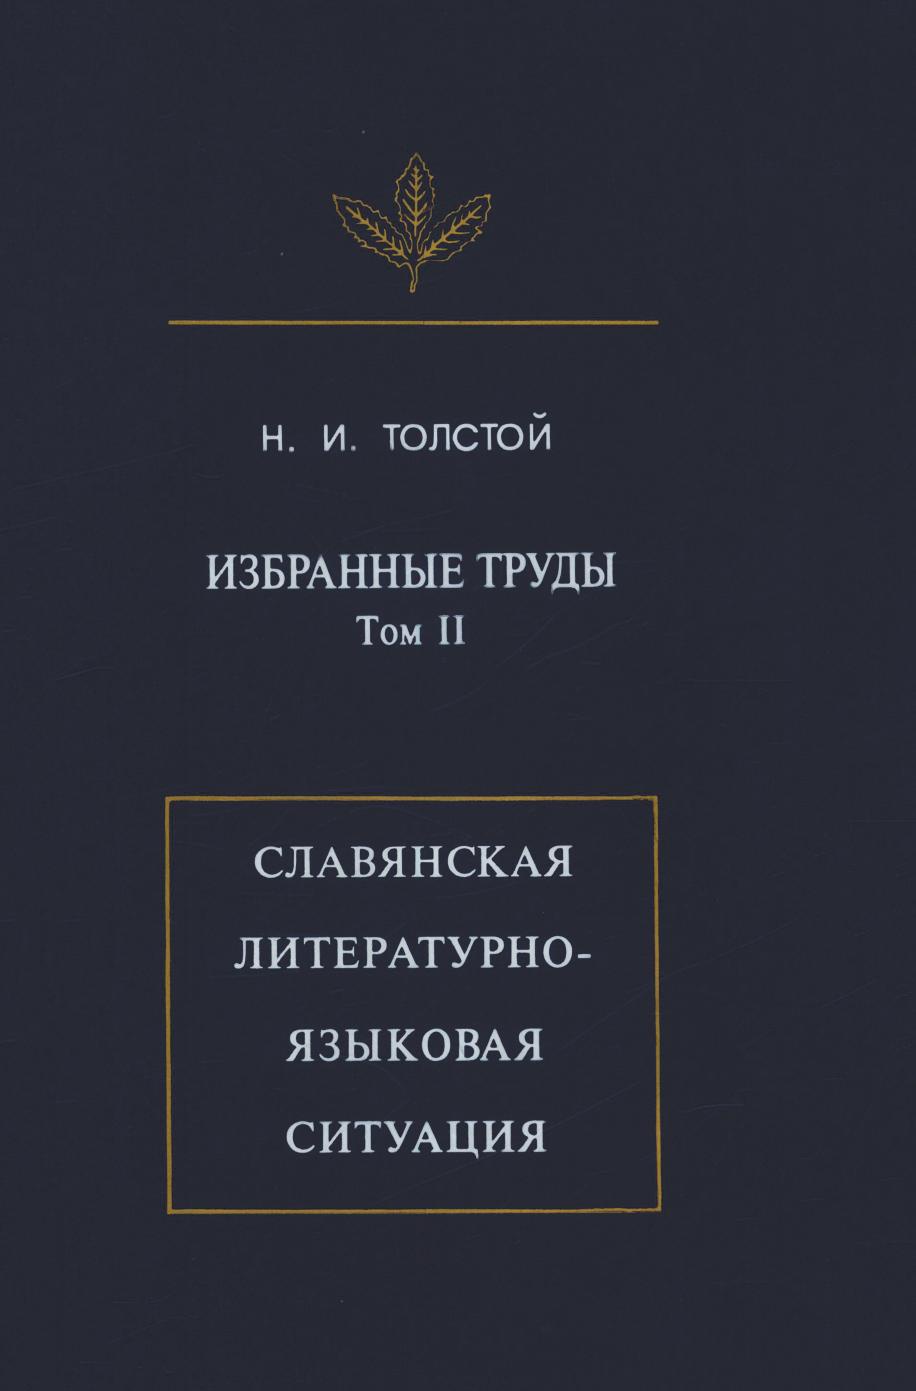 Избранныа труды: Славянская литературно-языковая ситуация